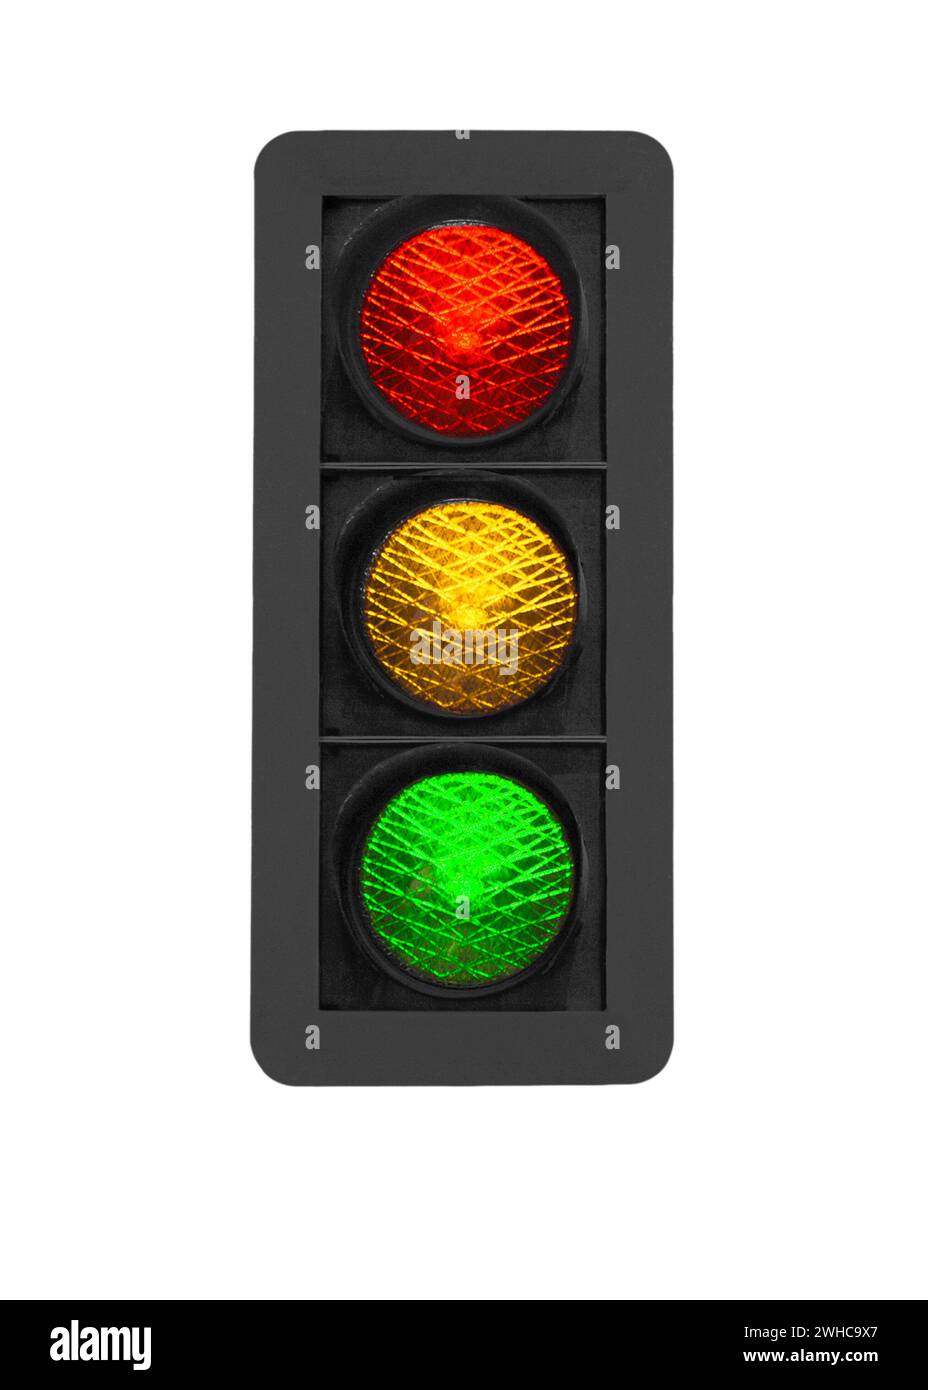 Feu de signalisation, rouge, jaune, vert comme feu de signalisation Banque D'Images